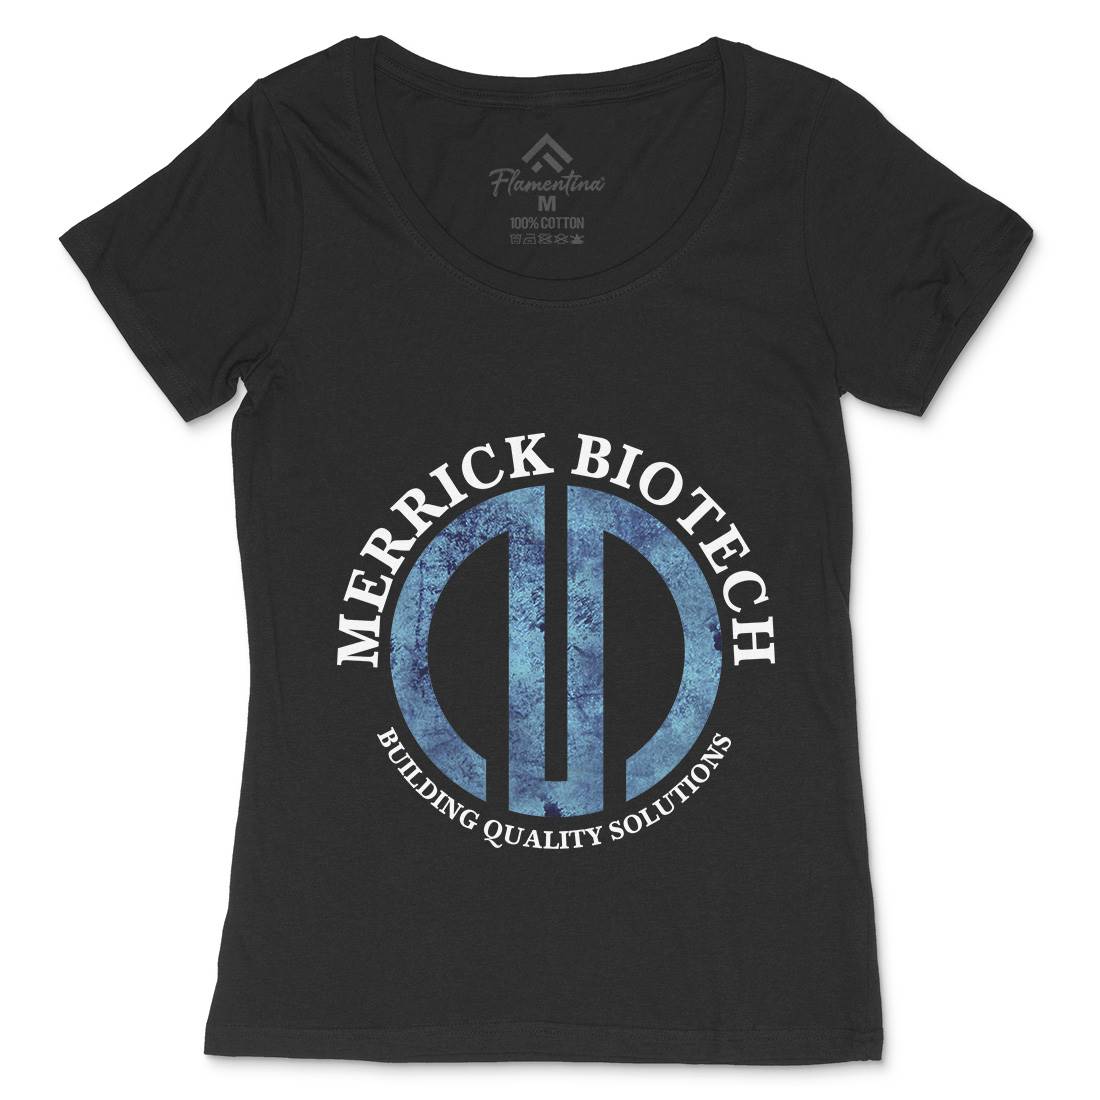 Merrick Biotech Womens Scoop Neck T-Shirt Space D393